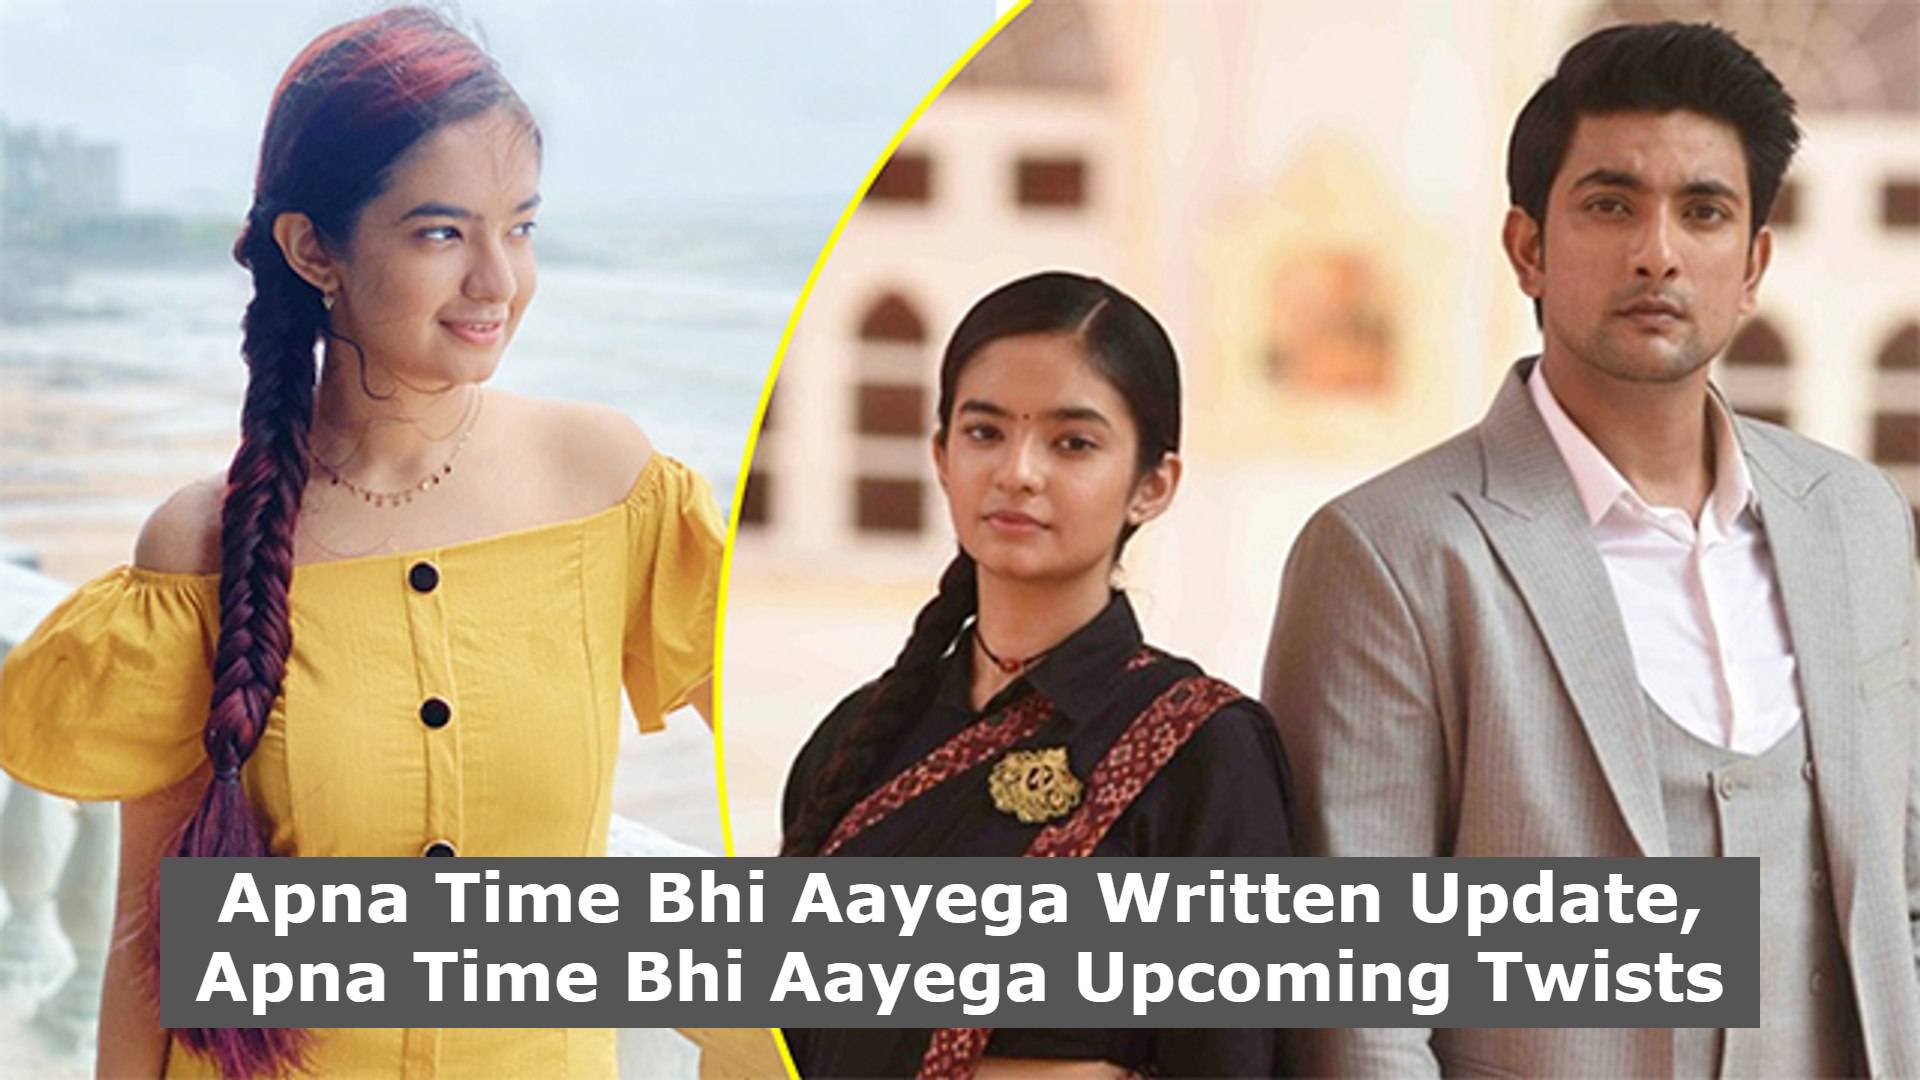 Apna Time Bhi Aayega Written Update, Apna Time Bhi Aayega Upcoming Twists